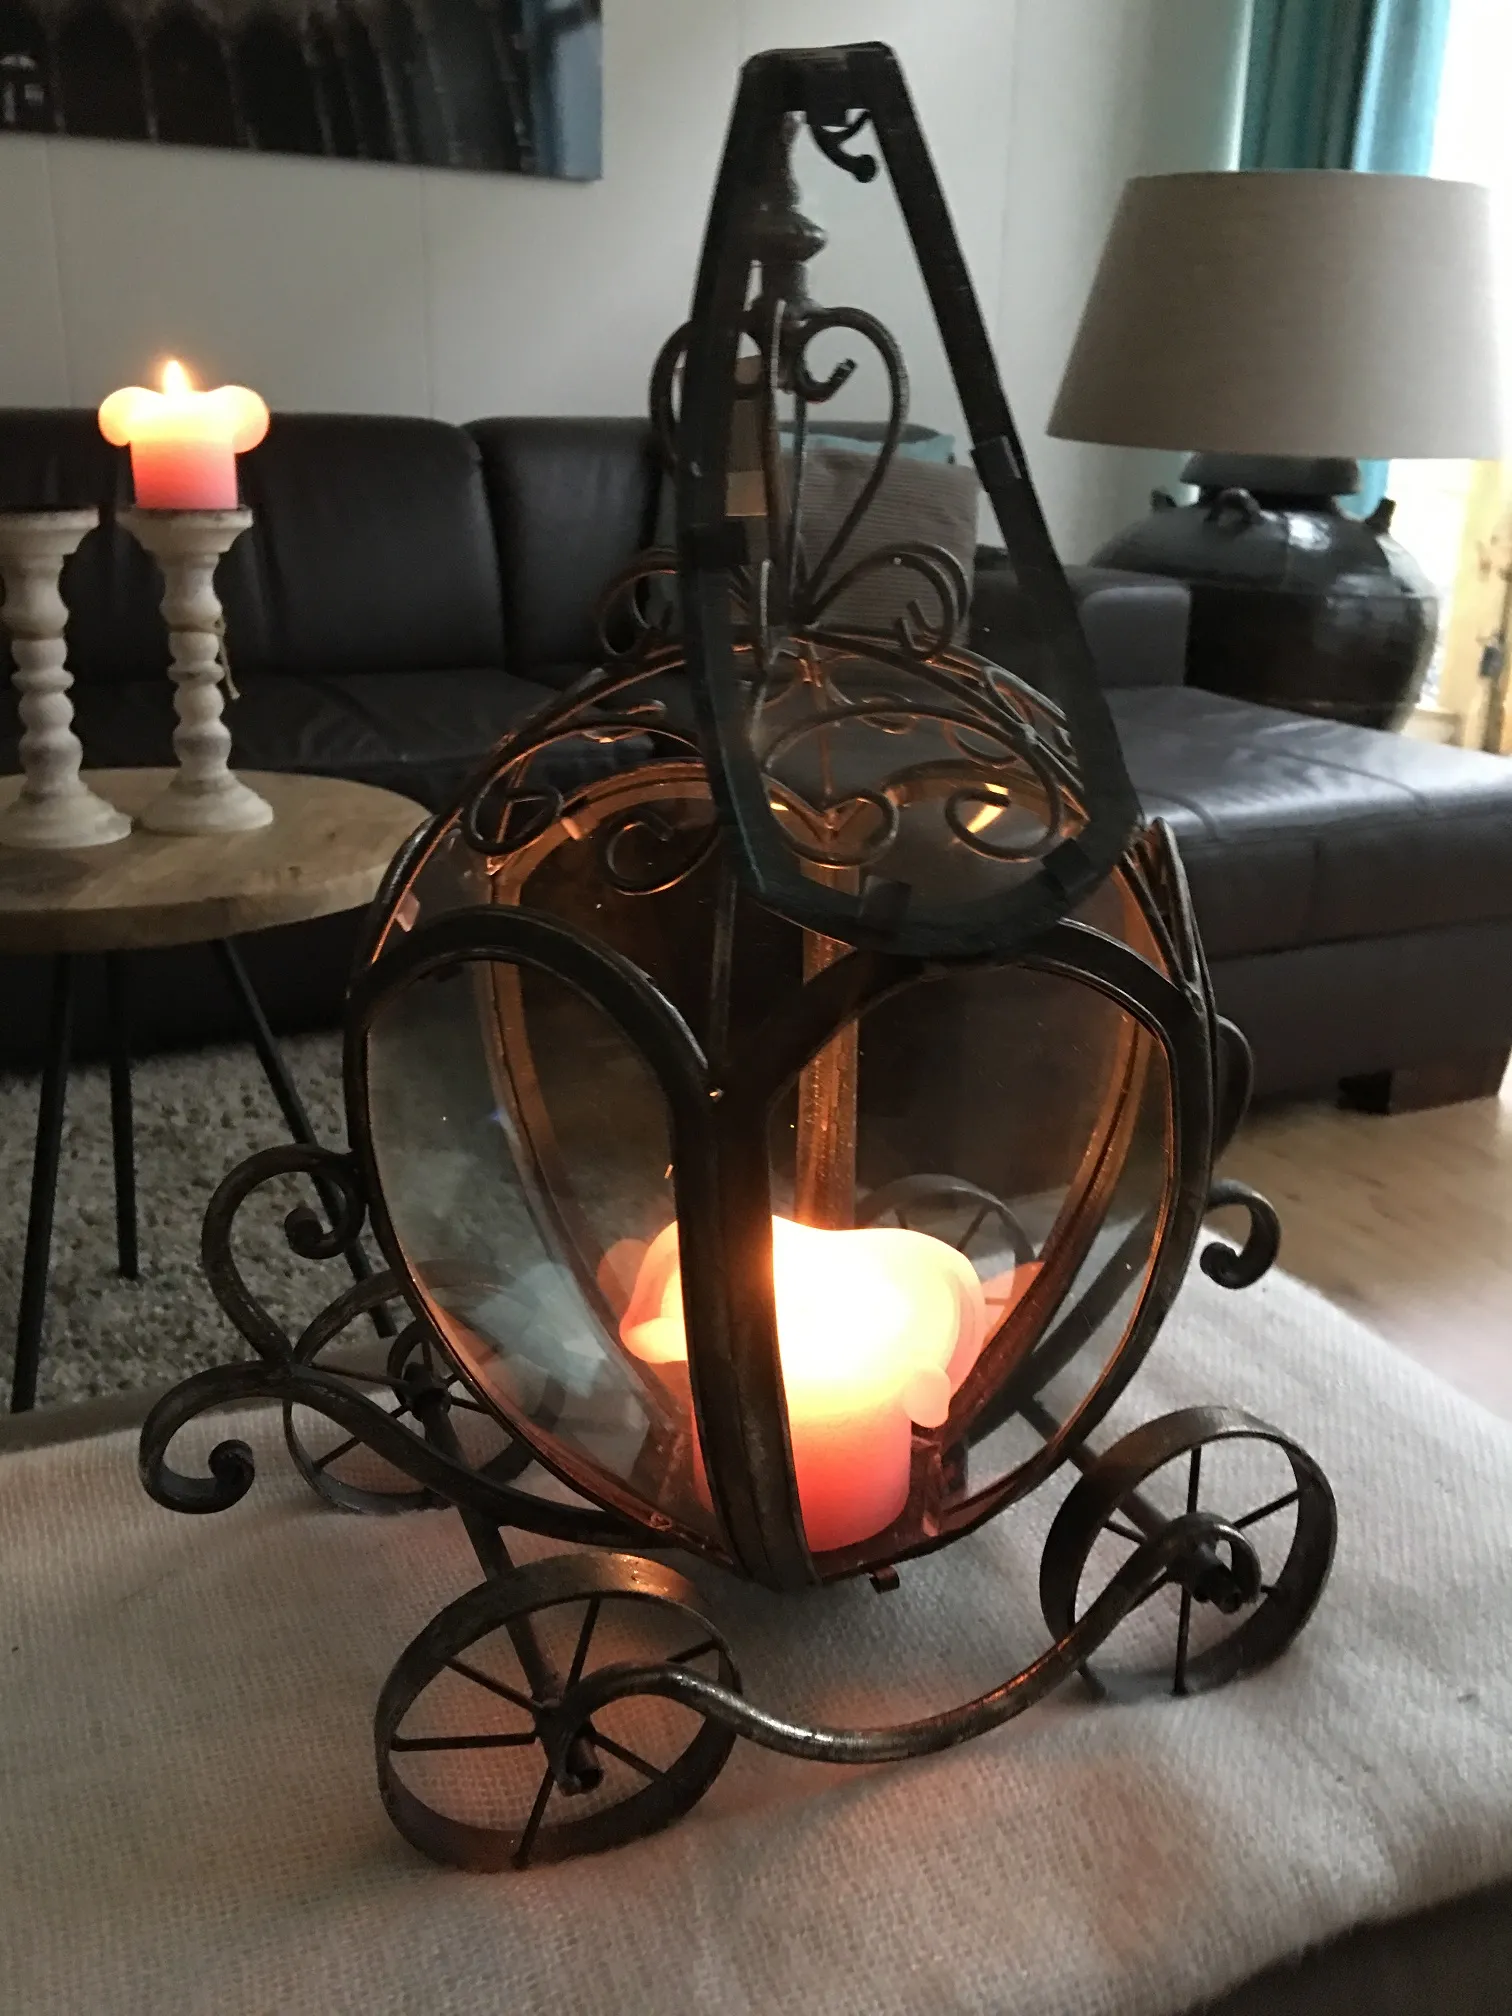 Vorbildlich Metallkutschen-Kerzenhalter, sehr schön - webshop decoratie dé in huis! - houseandgarden.shop voor het om én